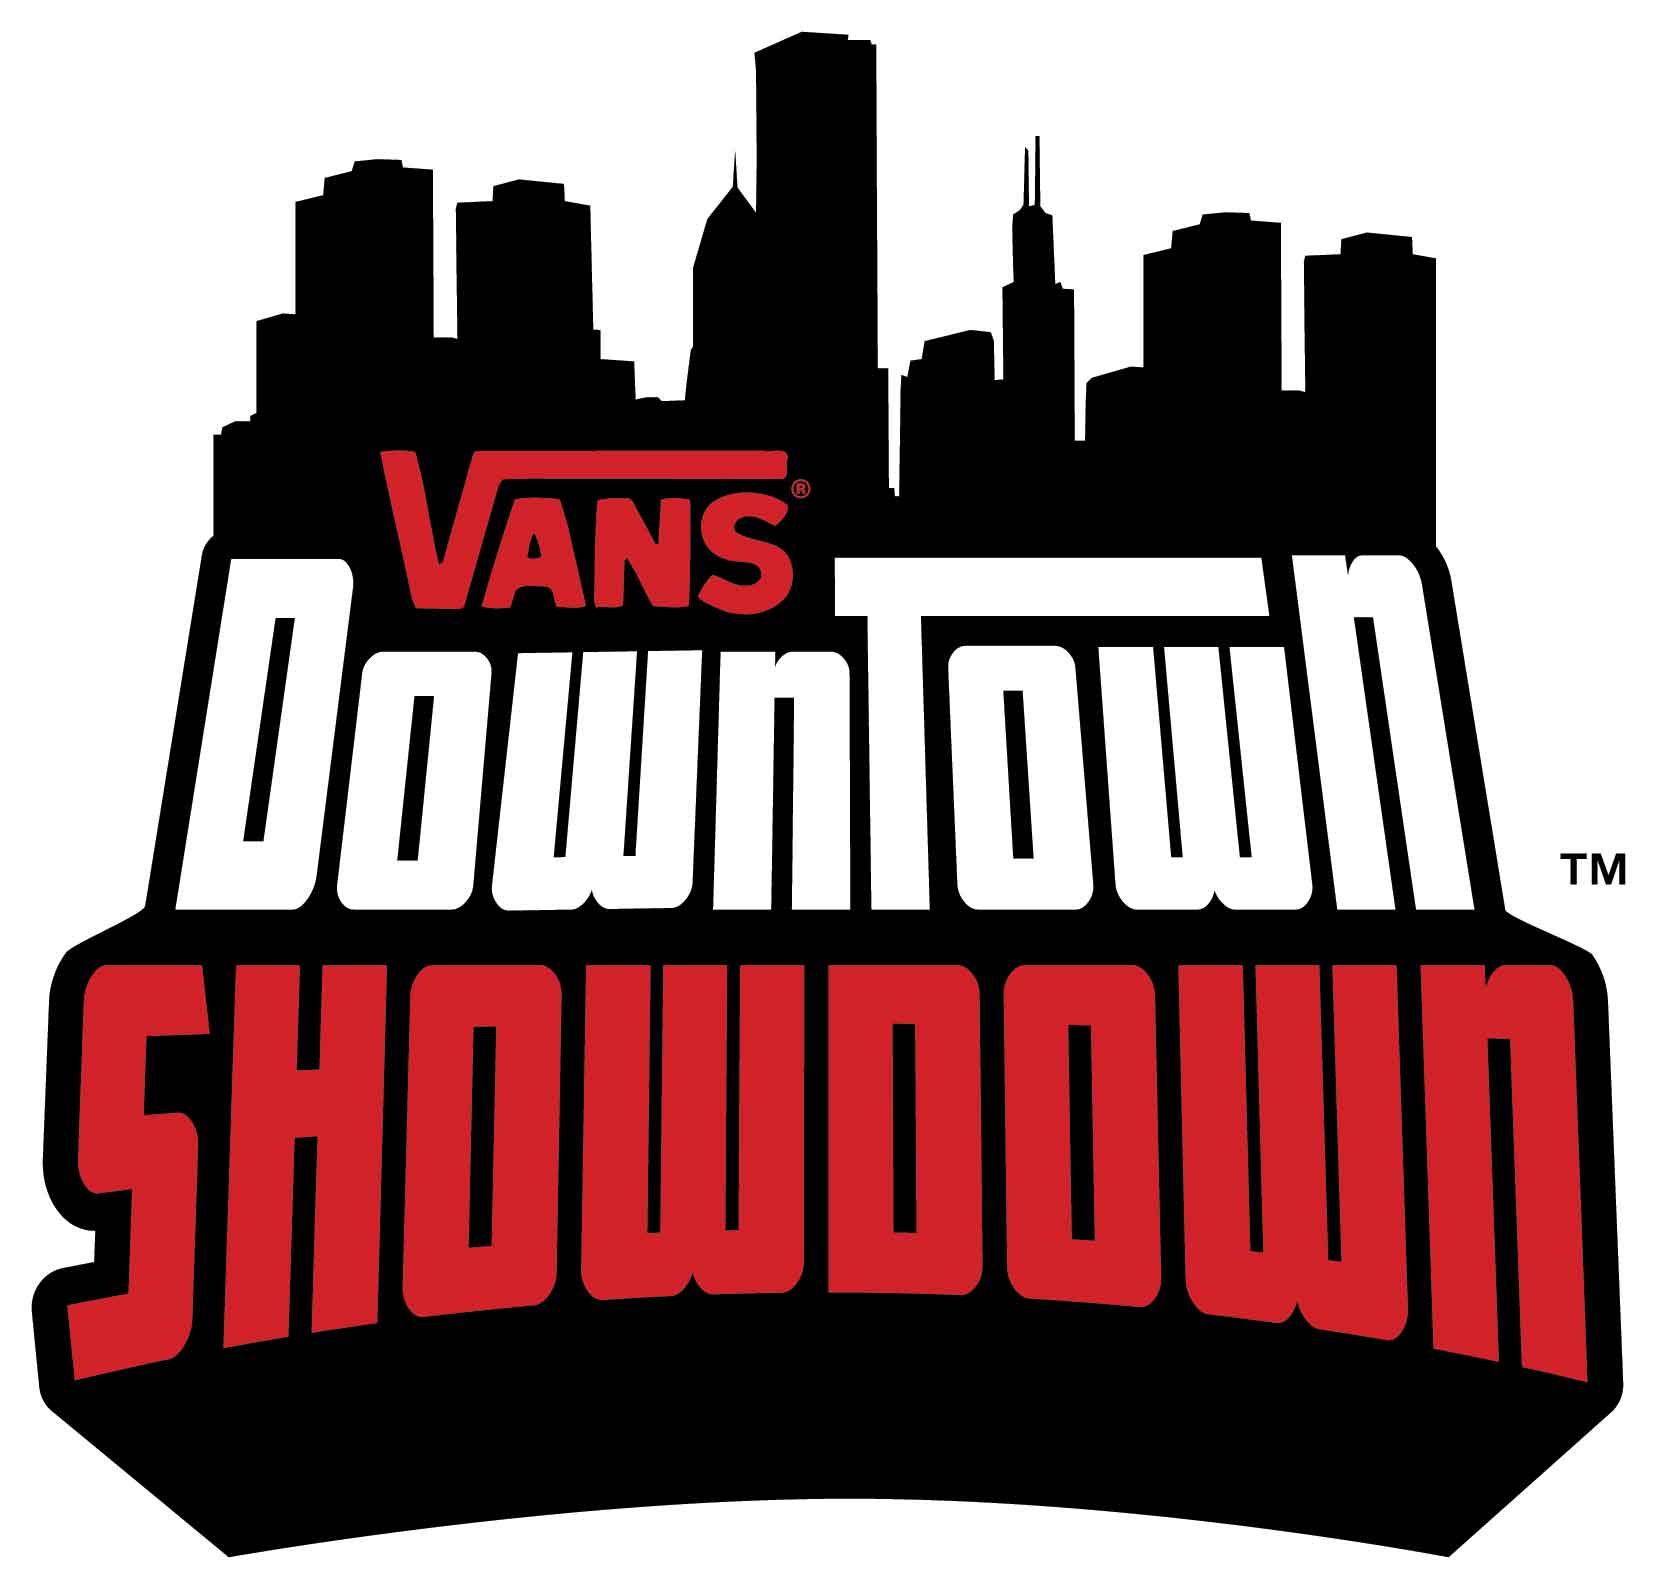 Vans Skateboarding Logo - 2008 Vans Downtown Showdown | TransWorld SKATEboarding